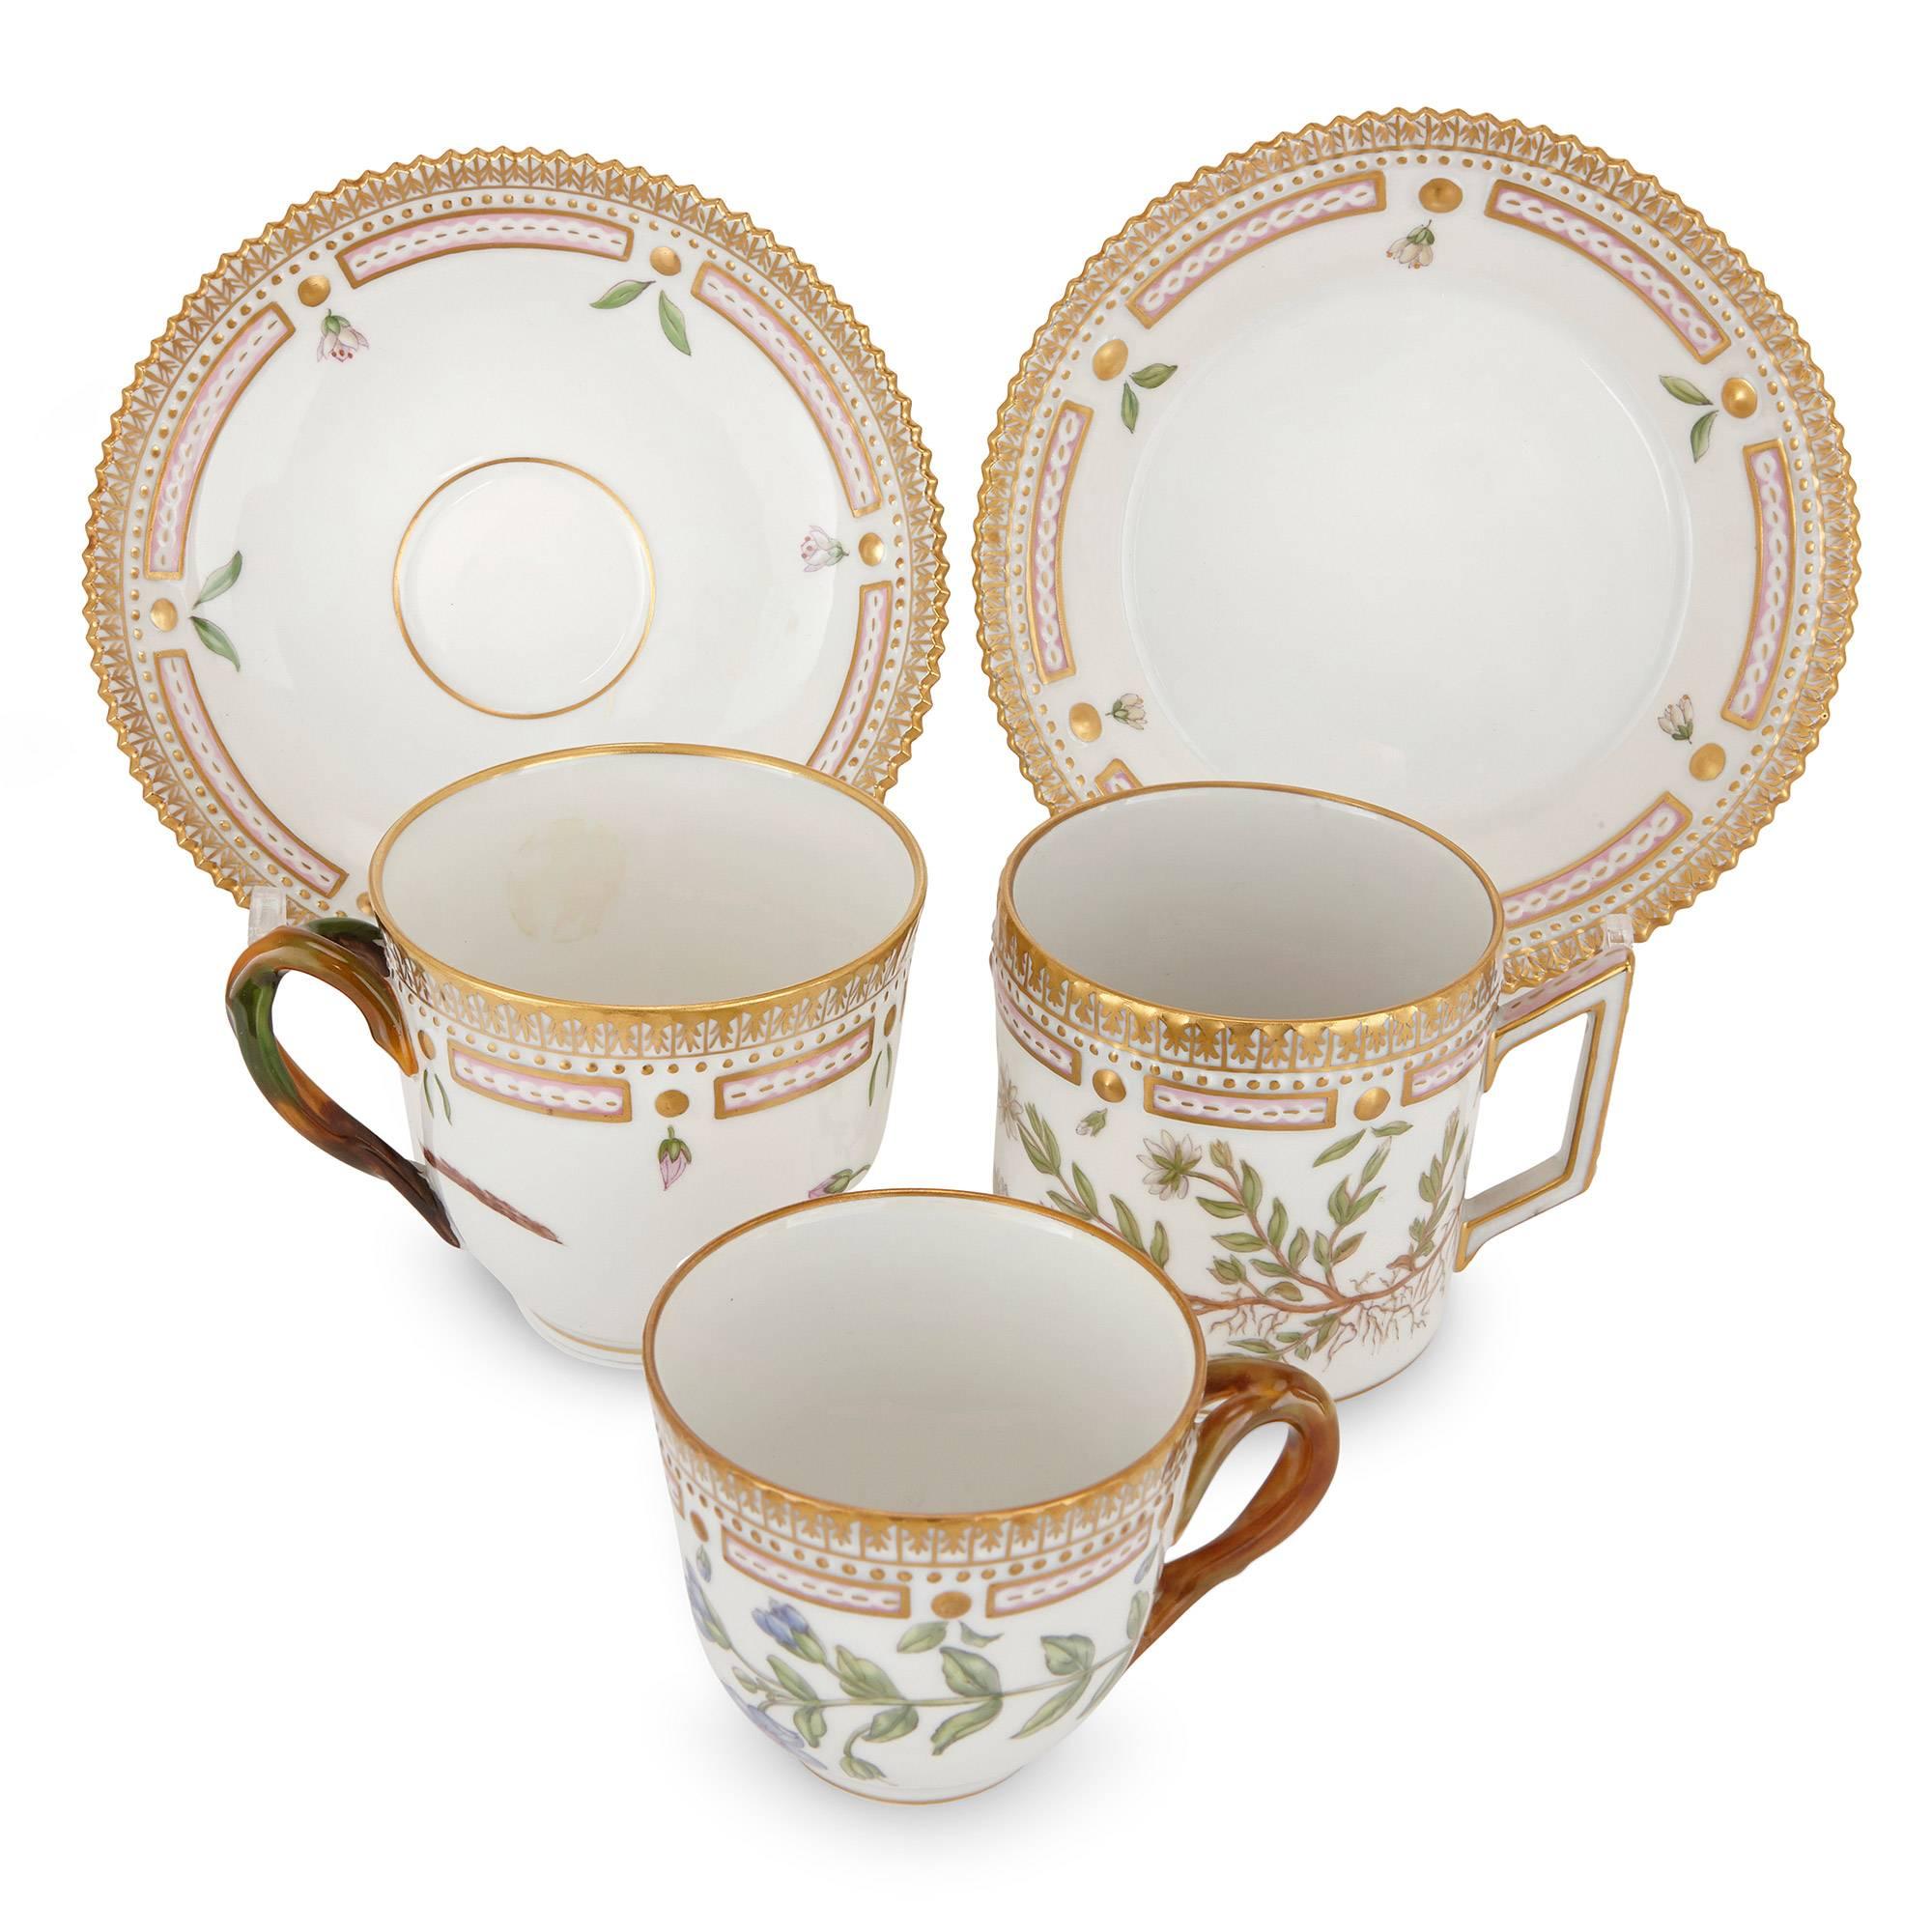 20th Century Antique 'Flora Danica' Porcelain Dinner Service by Royal Copenhagen